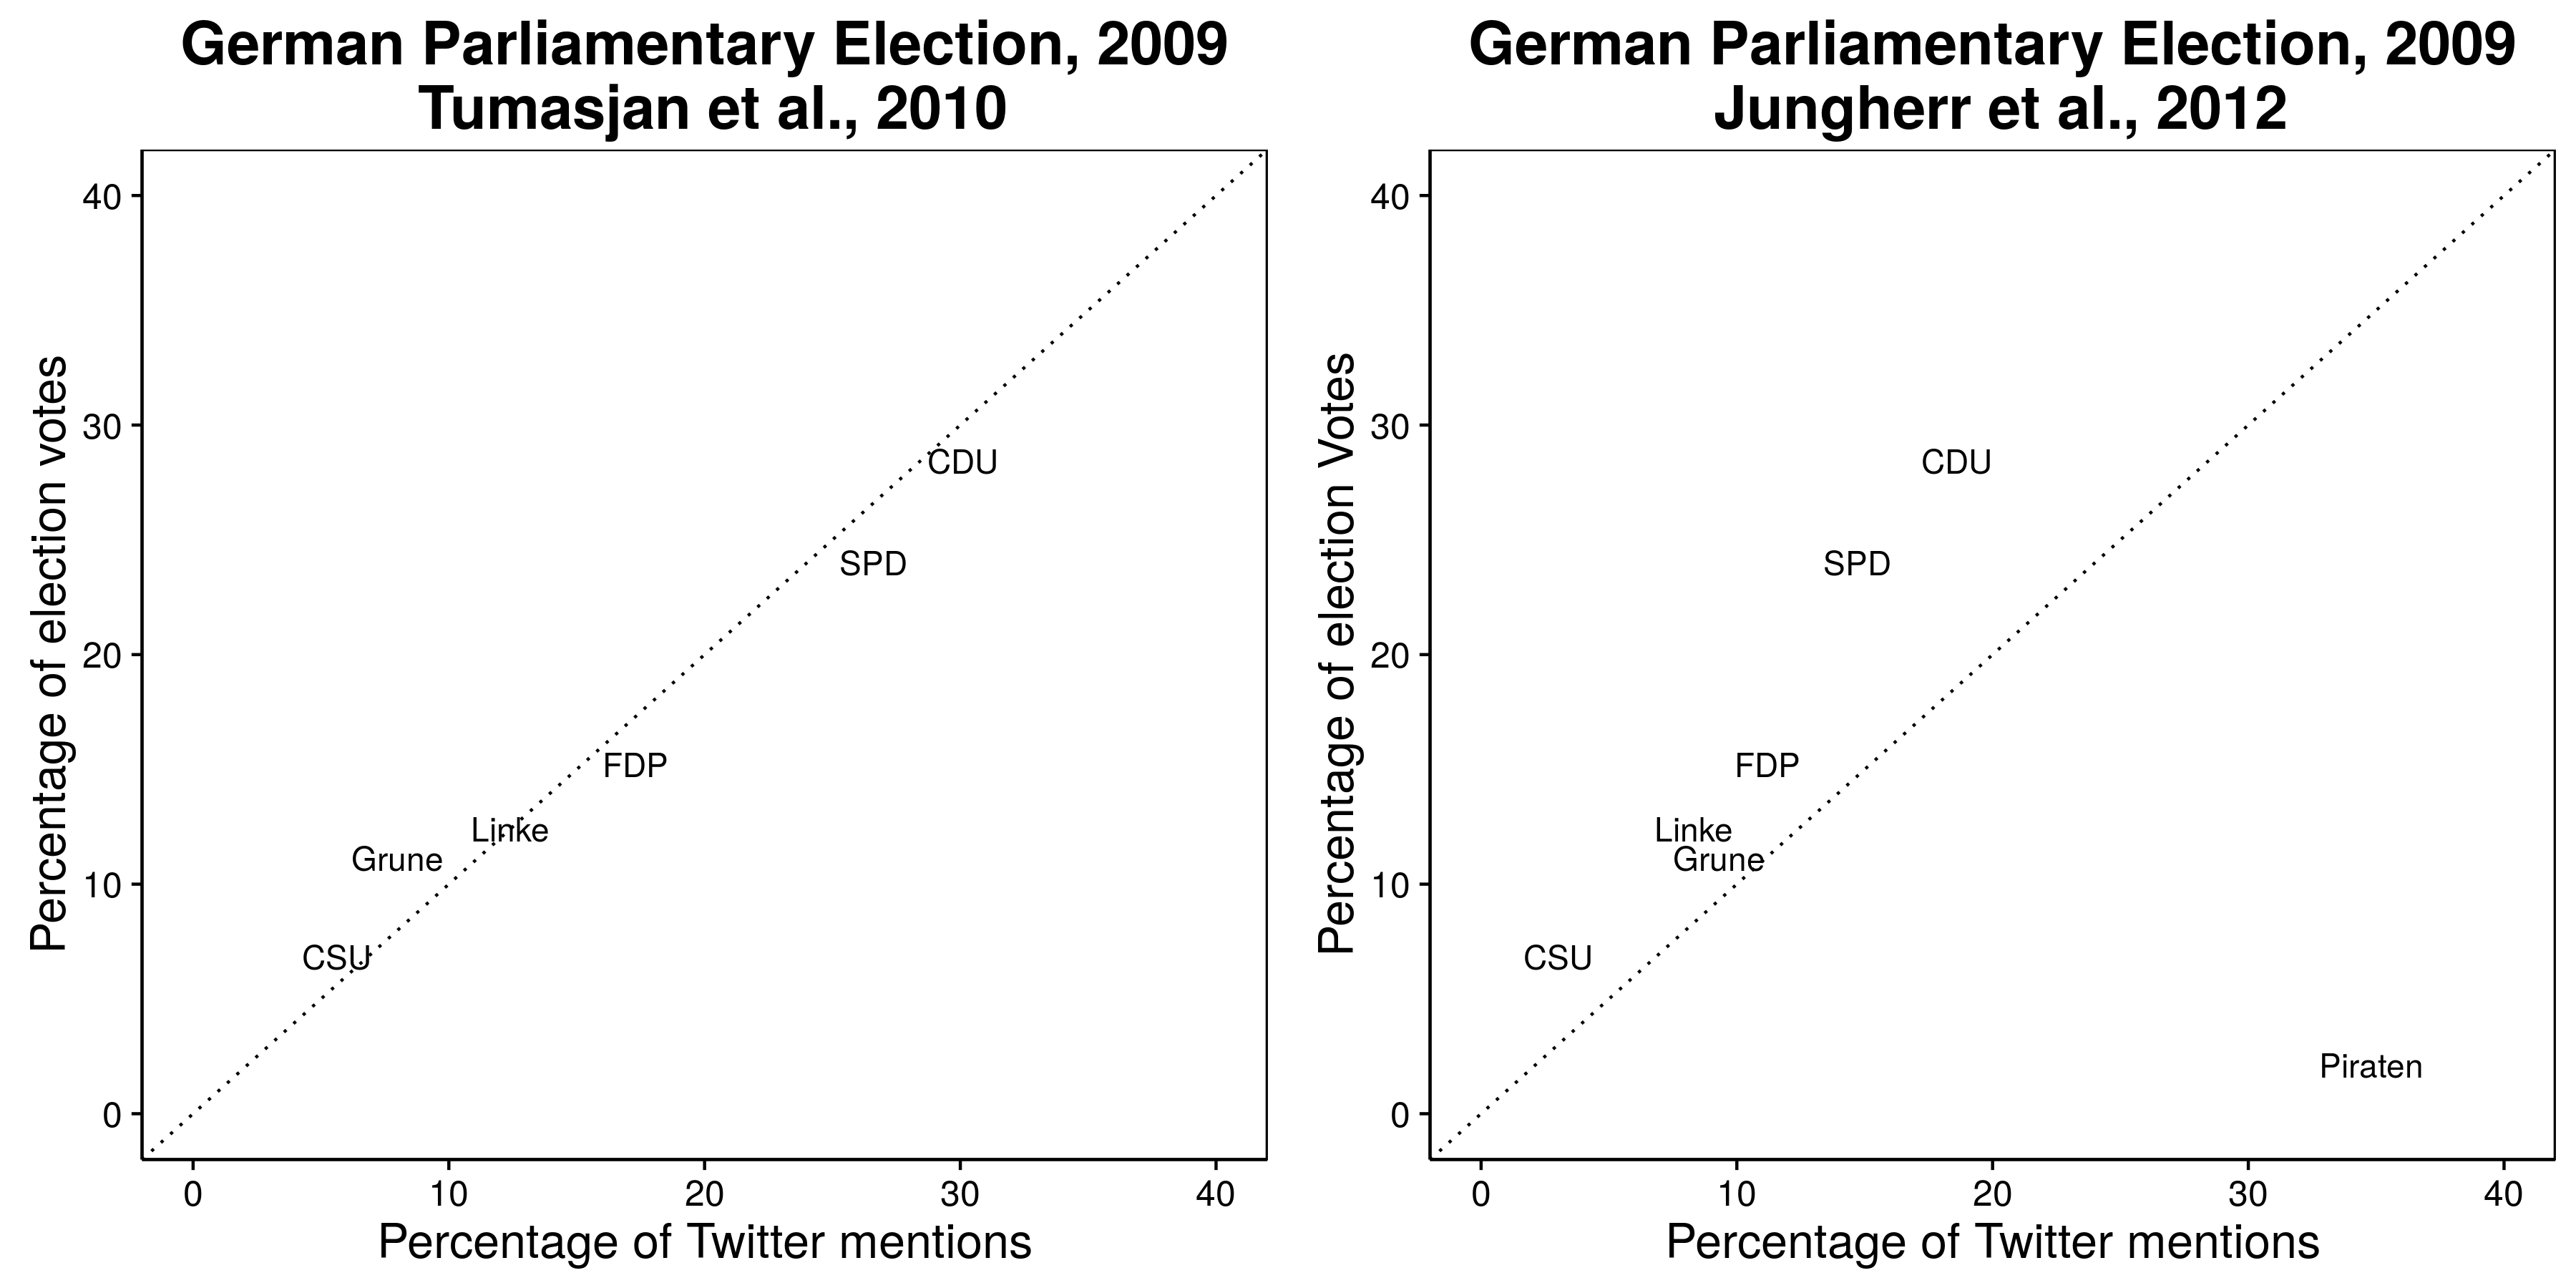 Obrázok 2.3: Zmienky o Twitteru predpovedajú výsledky nemeckých volieb v roku 2009 (Tumasjan et al., 2010), ale vylučuje stranu s najväčšou zmienkou: Pirate Party (Jungherr, Jürgens a Schoen 2012). Pozri Tumasjan et al. (2012) za argument v prospech vylúčenia pirátskej strany. Adaptované od Tumasjan a kol. (2010), tabuľka 4 a Jungherr, Jürgens a Schoen (2012), tabuľka 2.